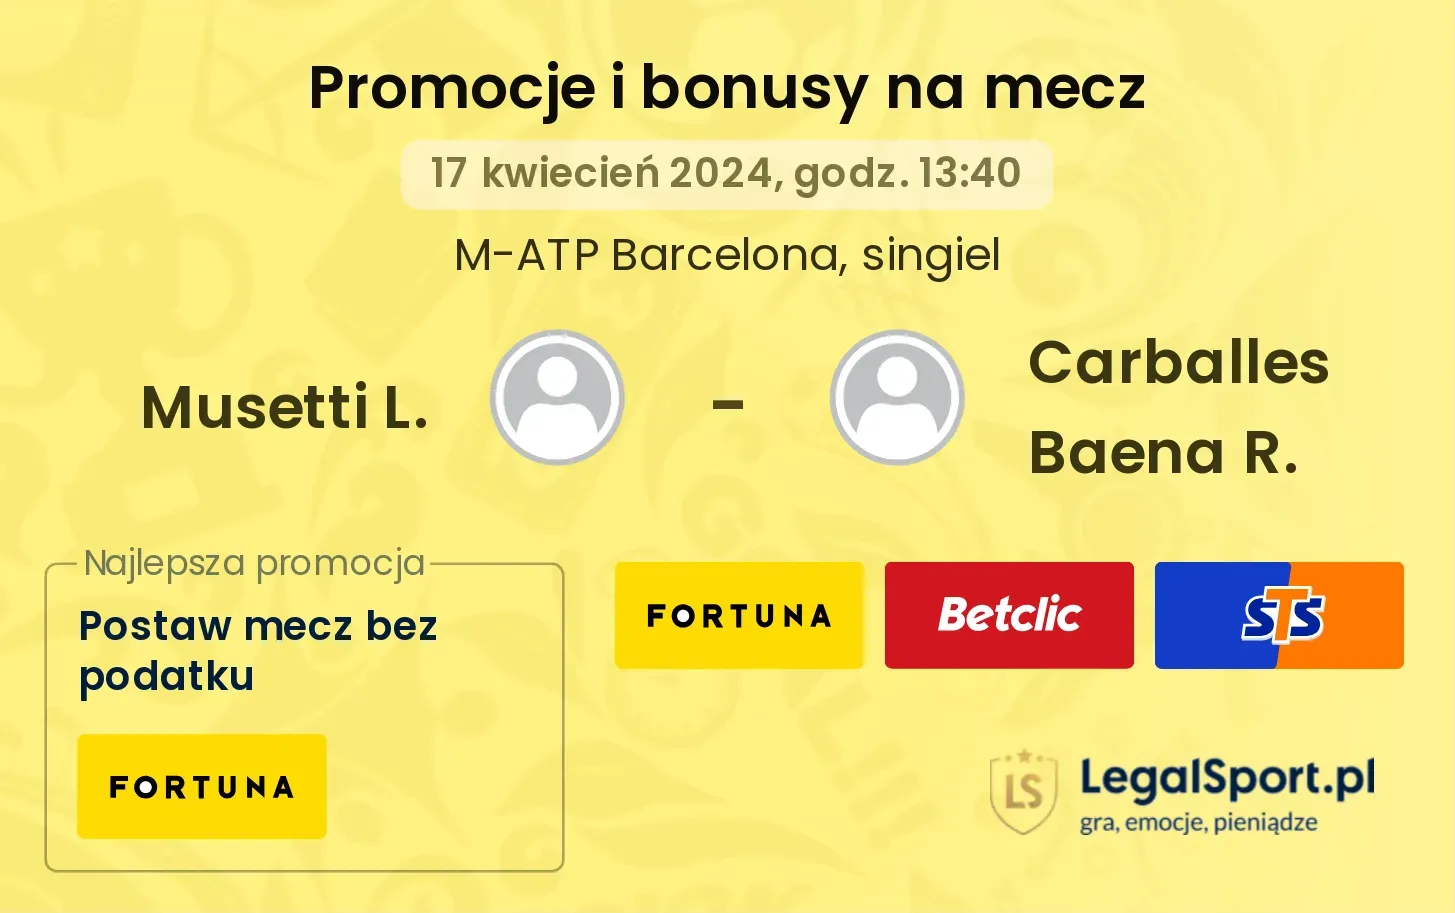 Musetti L. - Carballes Baena R. promocje bonusy na mecz